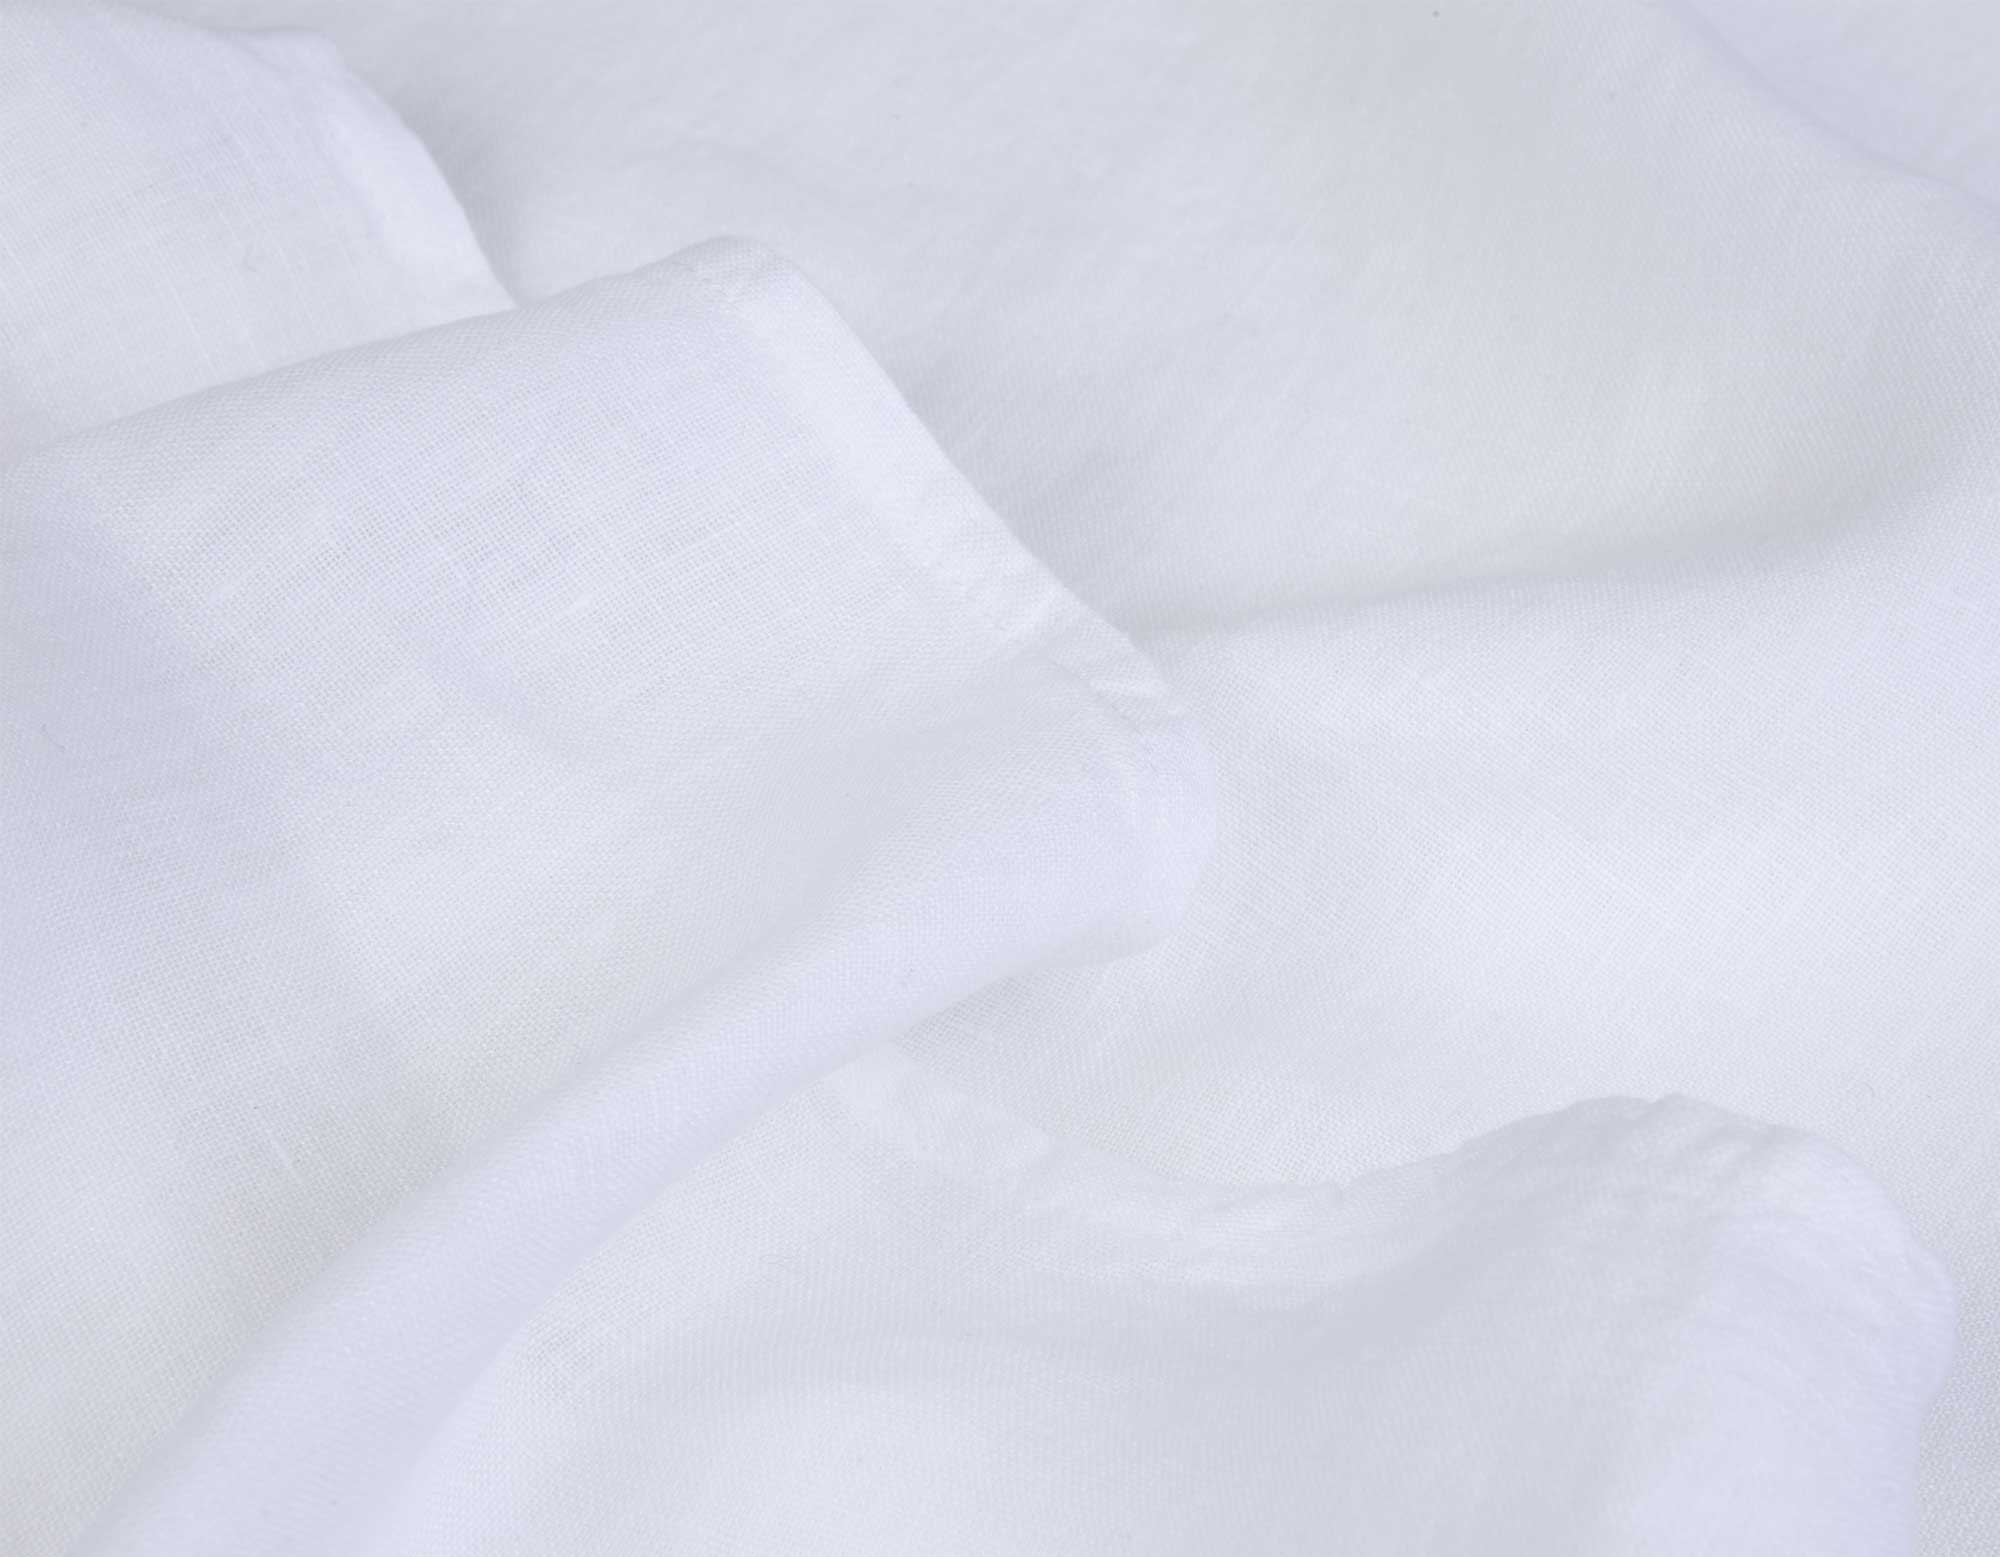 Closeup of white linen bedding